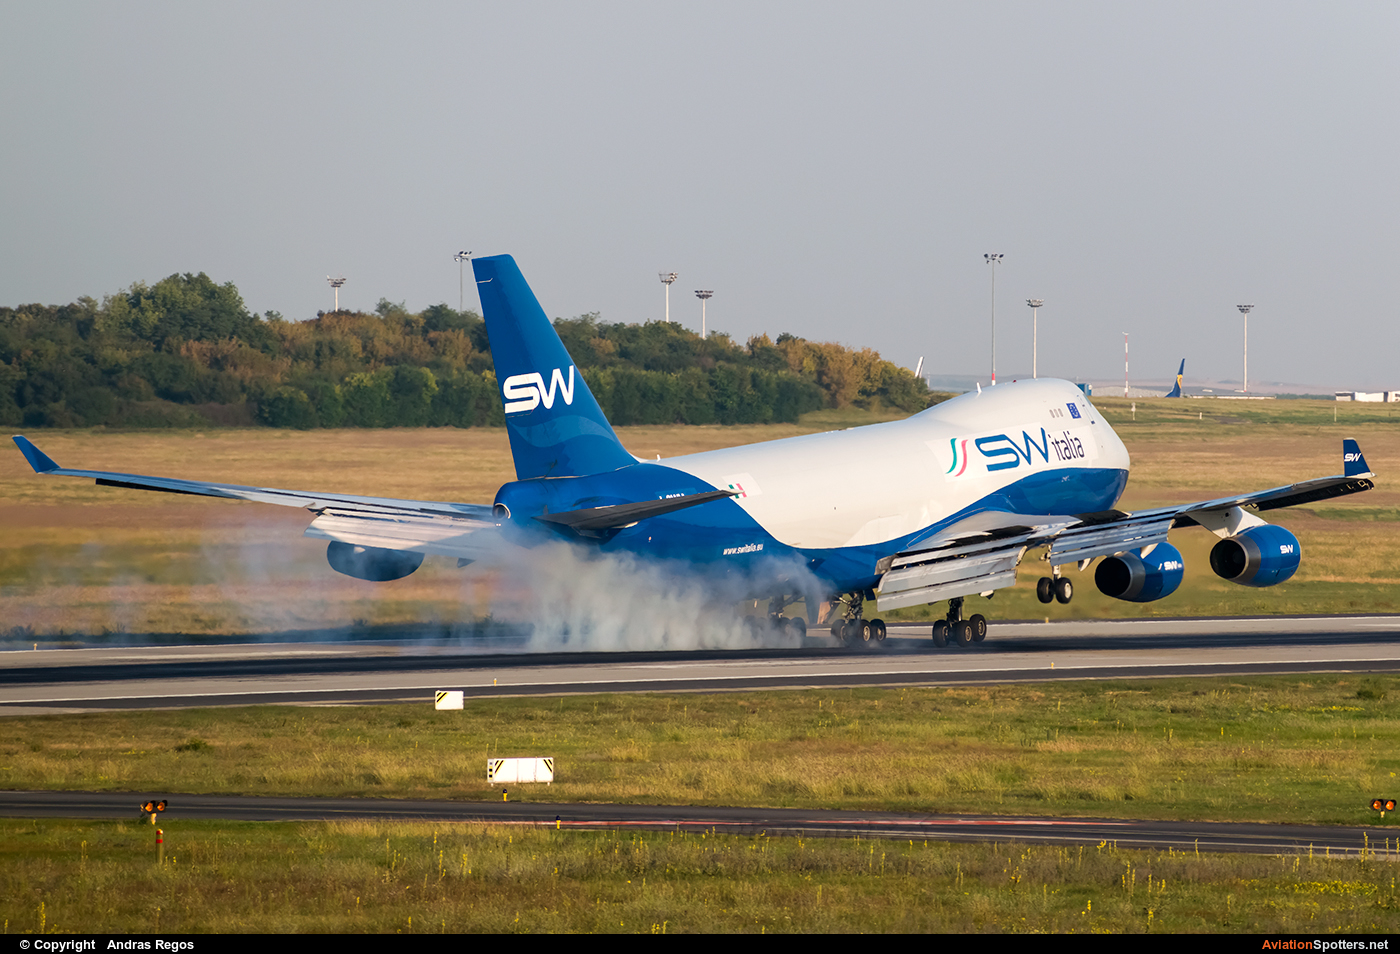 Silk Way Airlines  -  747-400  (I-SWIA) By Andras Regos (regos)